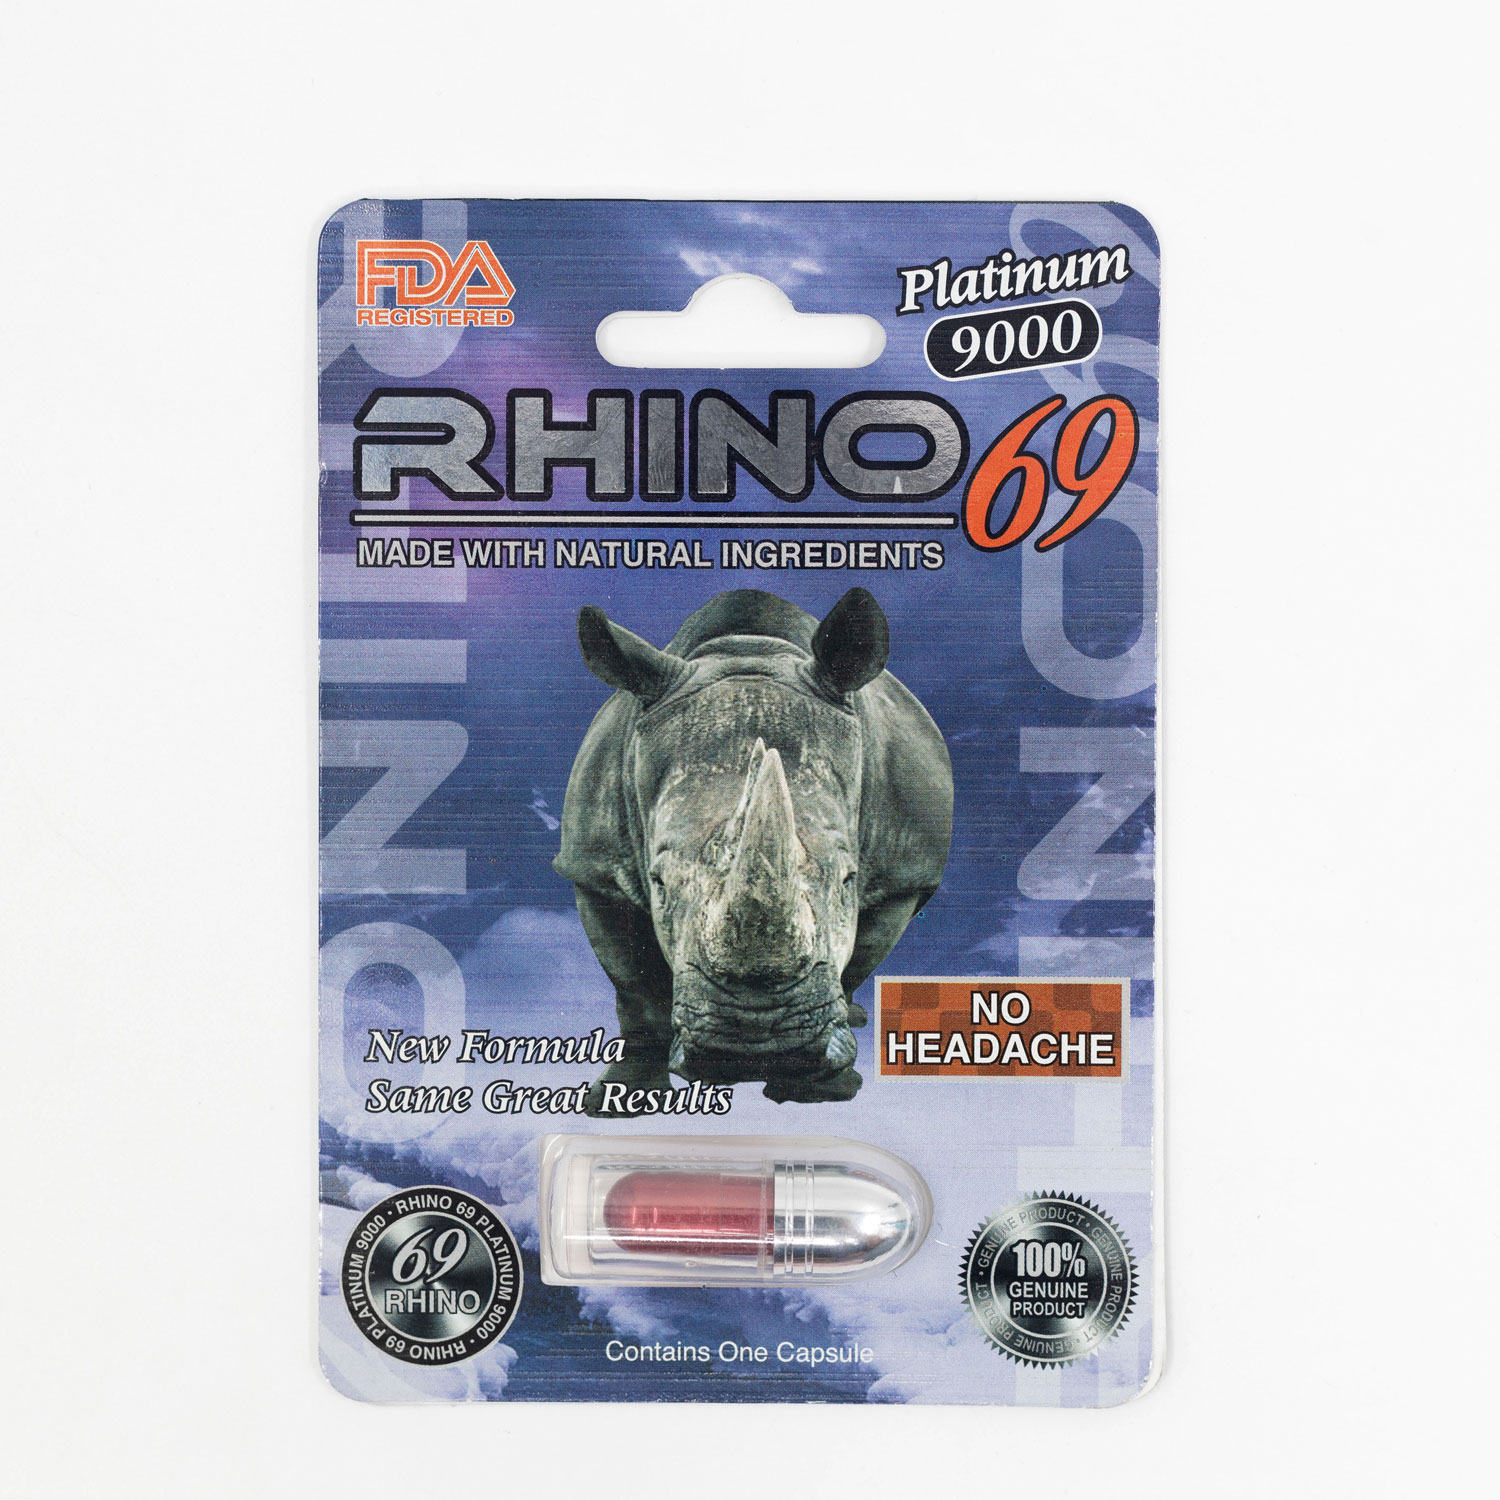 Rhino 69 Platinum 9000 tăng cường sinh lý nam tự nhiên